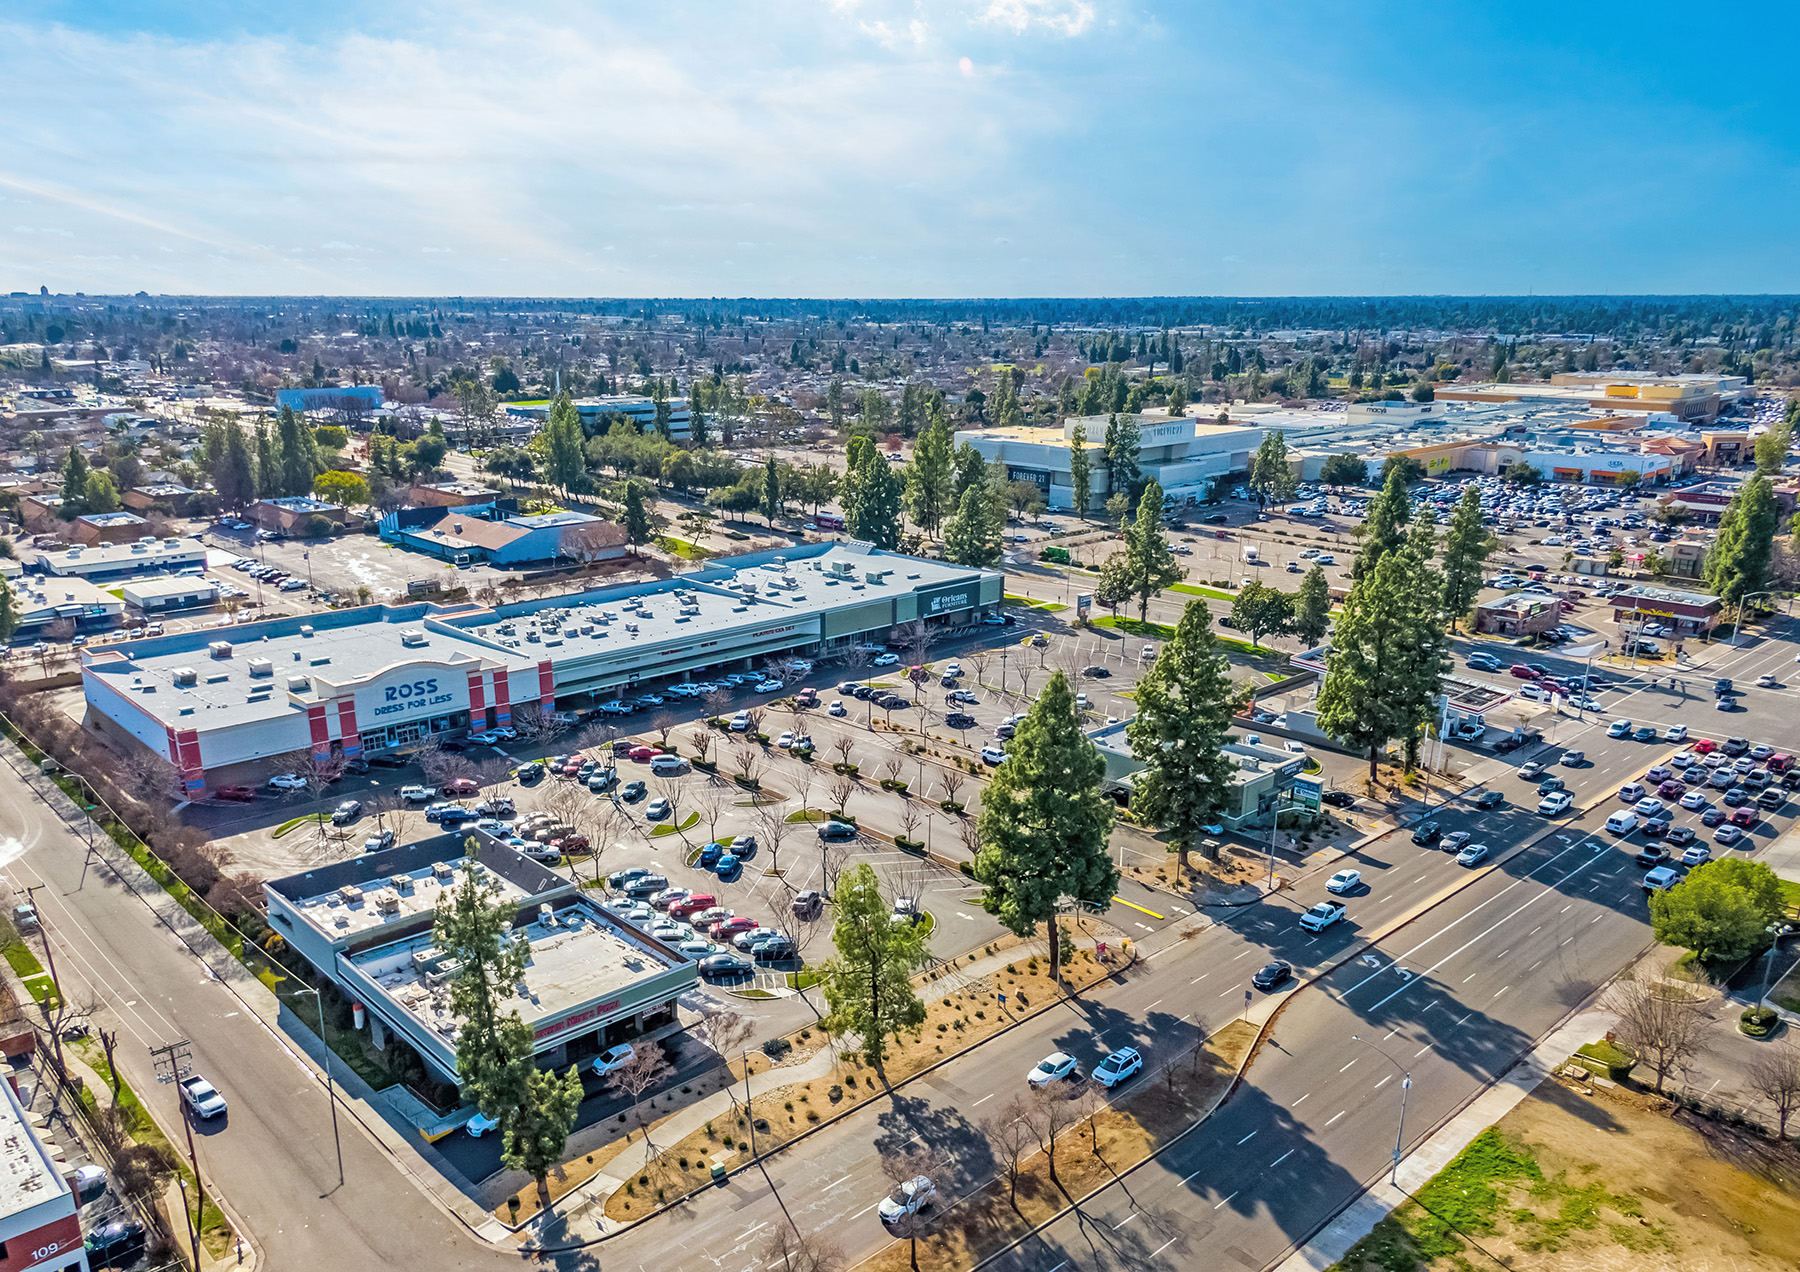 Hanley Investment Group Arranges Sale of Ross-Anchored Shopping Center in Fresno, Calif., for $15.8 Million